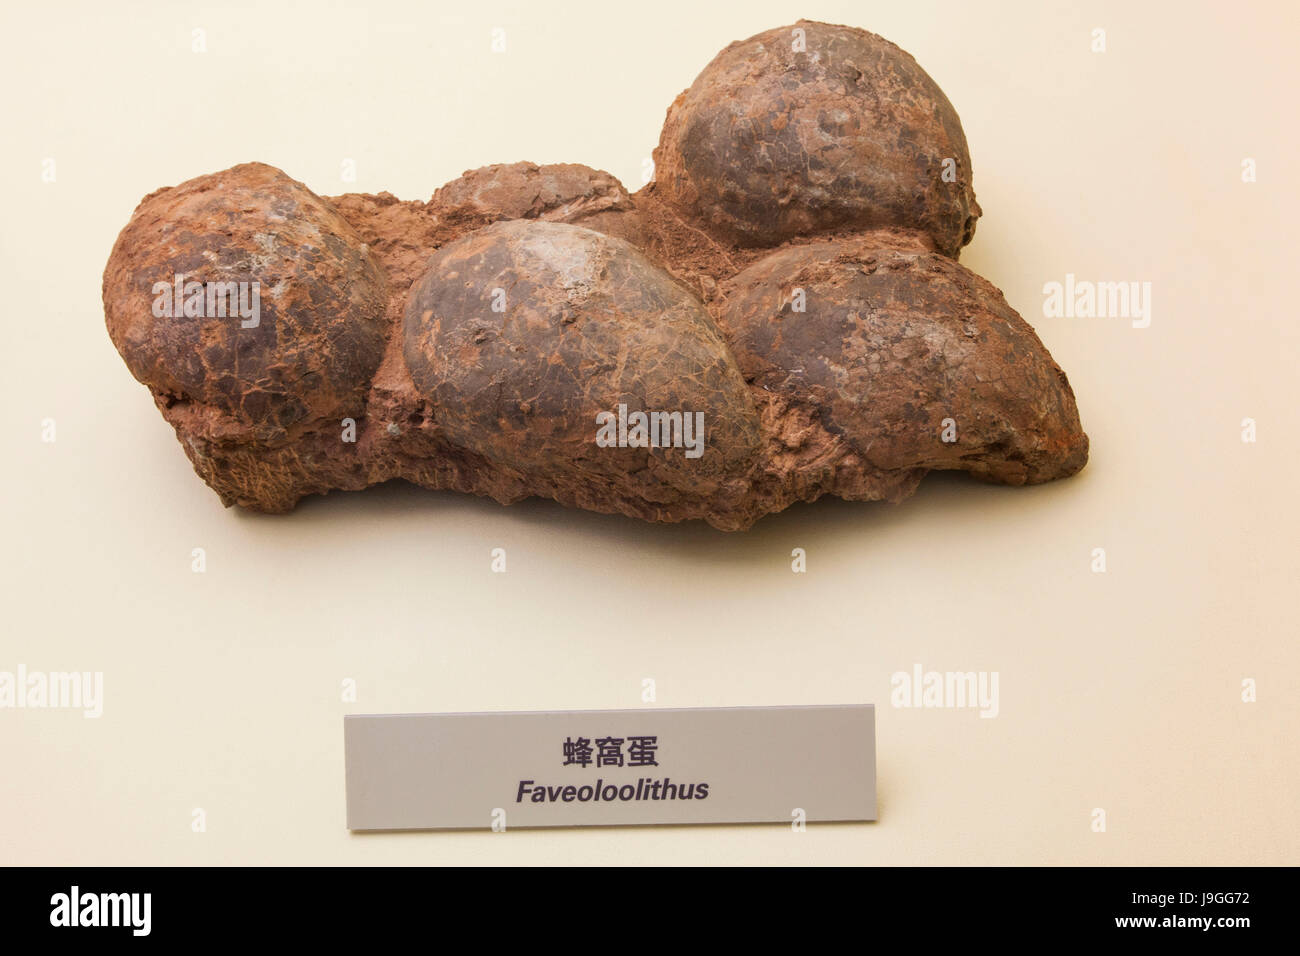 La Chine, oeufs de dinosaures fossilisés Banque D'Images